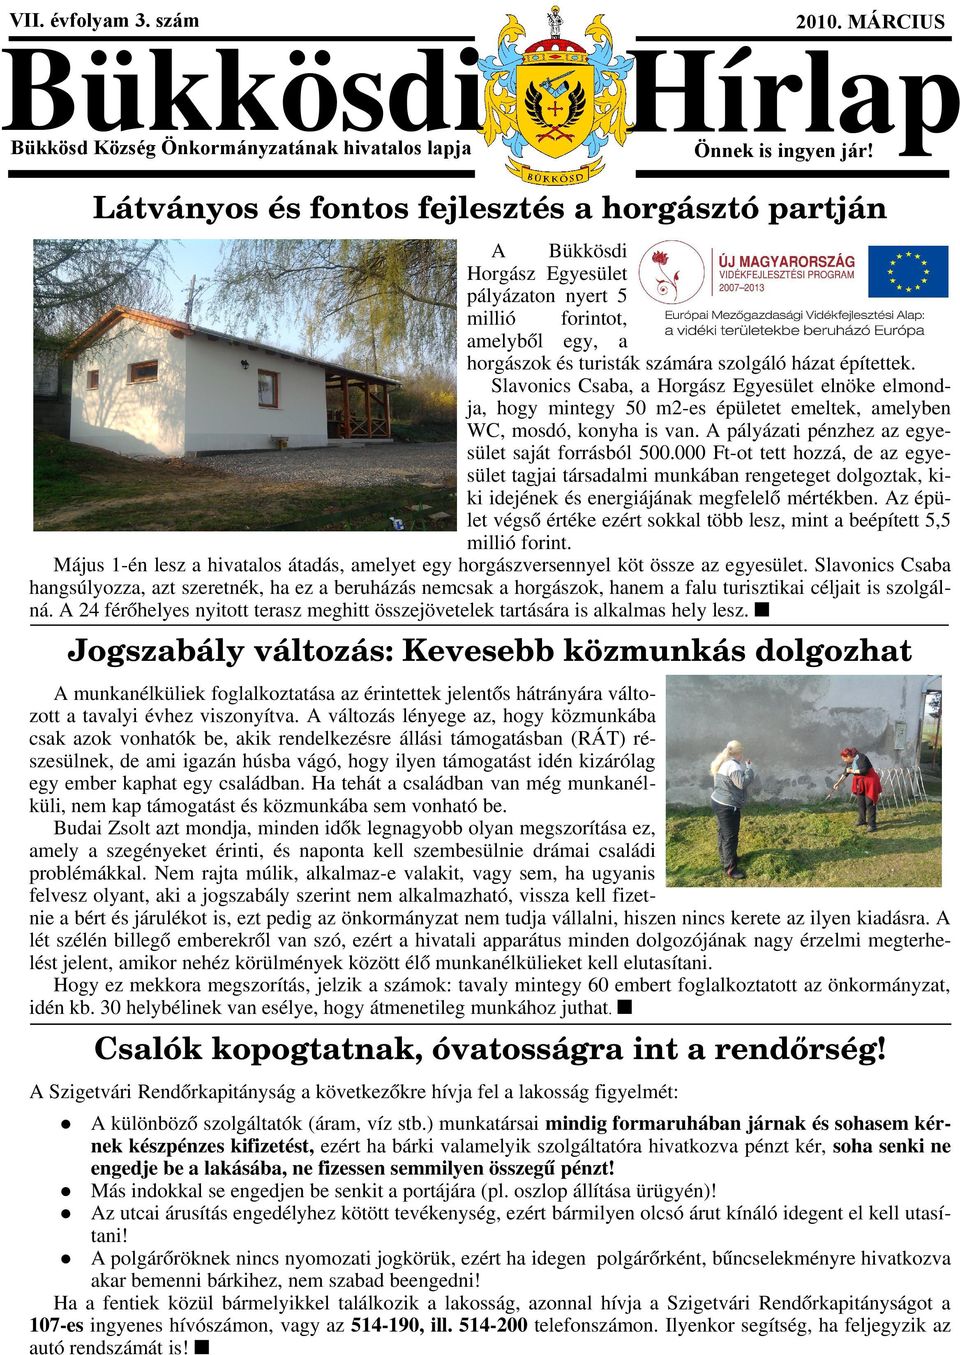 Slavonics Csaba, a Horgász Egyesület elnöke elmondja, hogy mintegy 50 m2-es épületet emeltek, amelyben WC, mosdó, konyha is van. A pályázati pénzhez az egyesület saját forrásból 500.